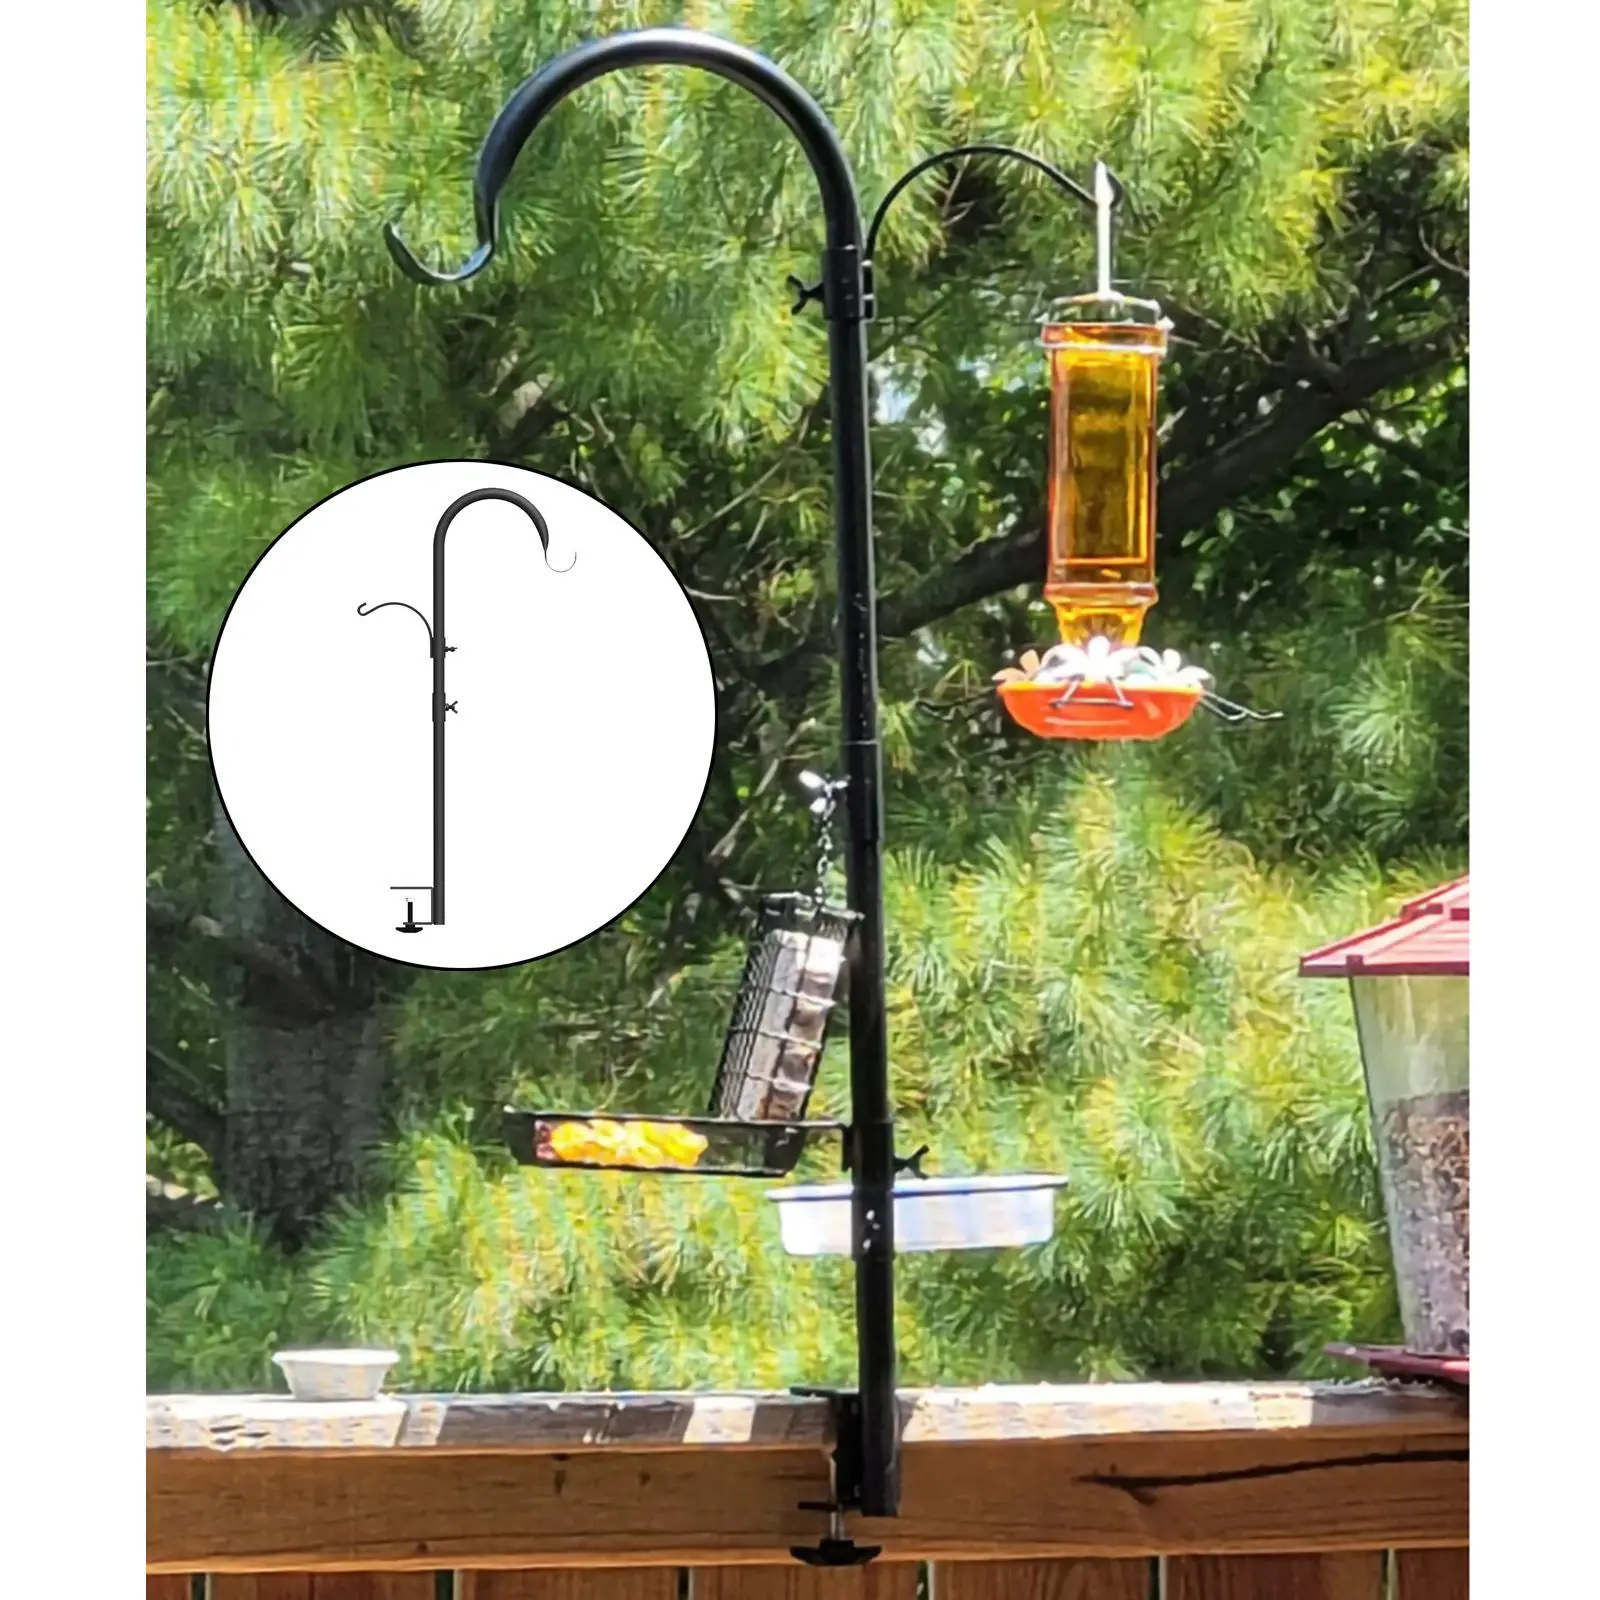 Bird Feeding Station 37 Inch Bird Feeder Pole Hanging Kit for Bird Watching, Bird Bath, Planter Hanger Bird Feeders Stand